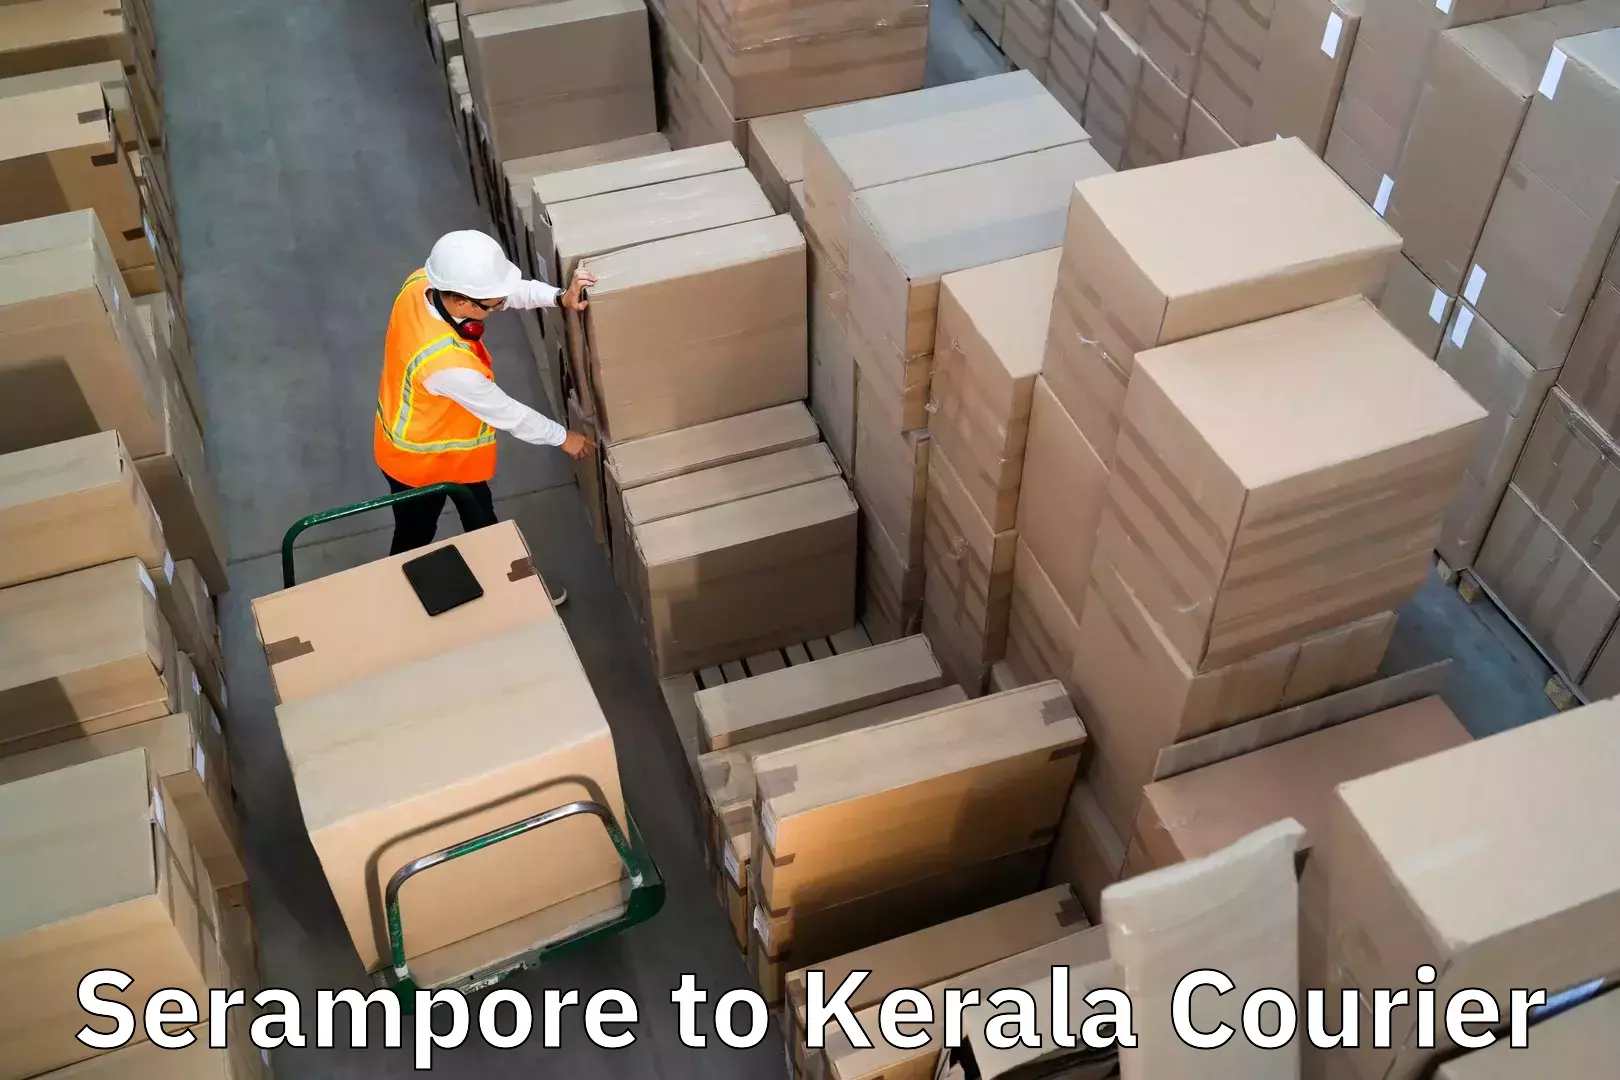 Baggage transport network Serampore to Irinjalakuda